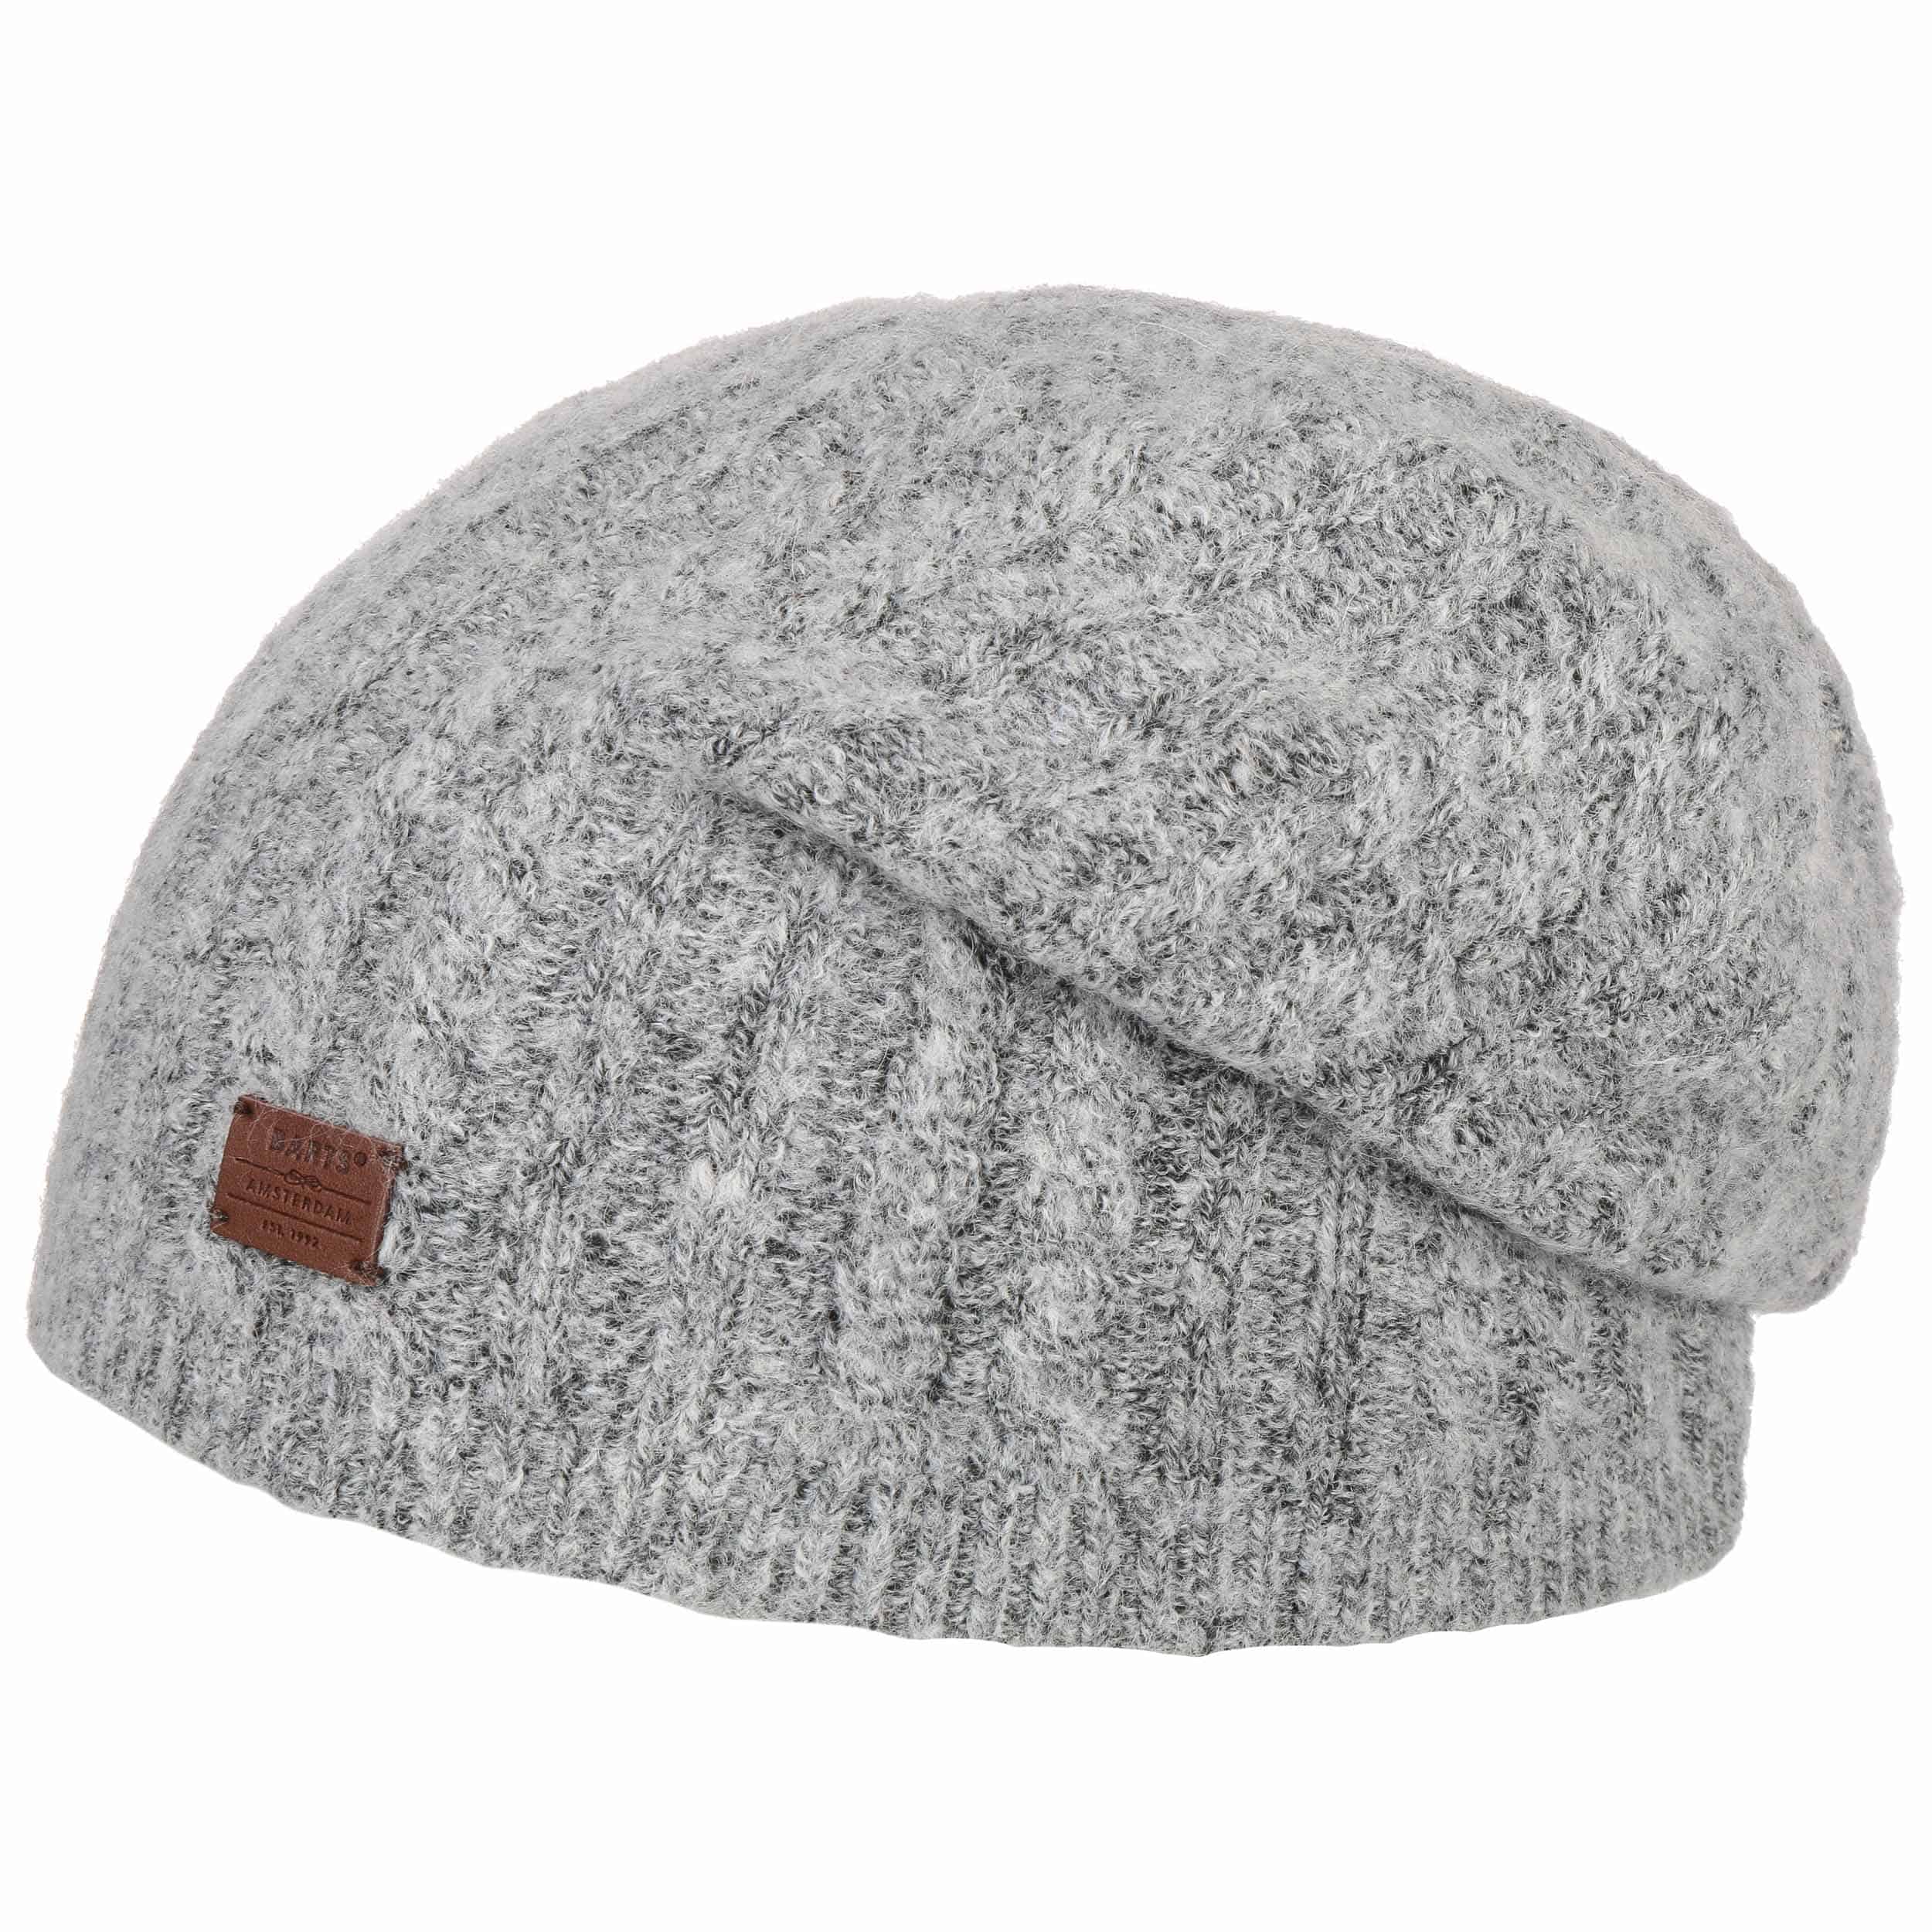 grey beanie hat